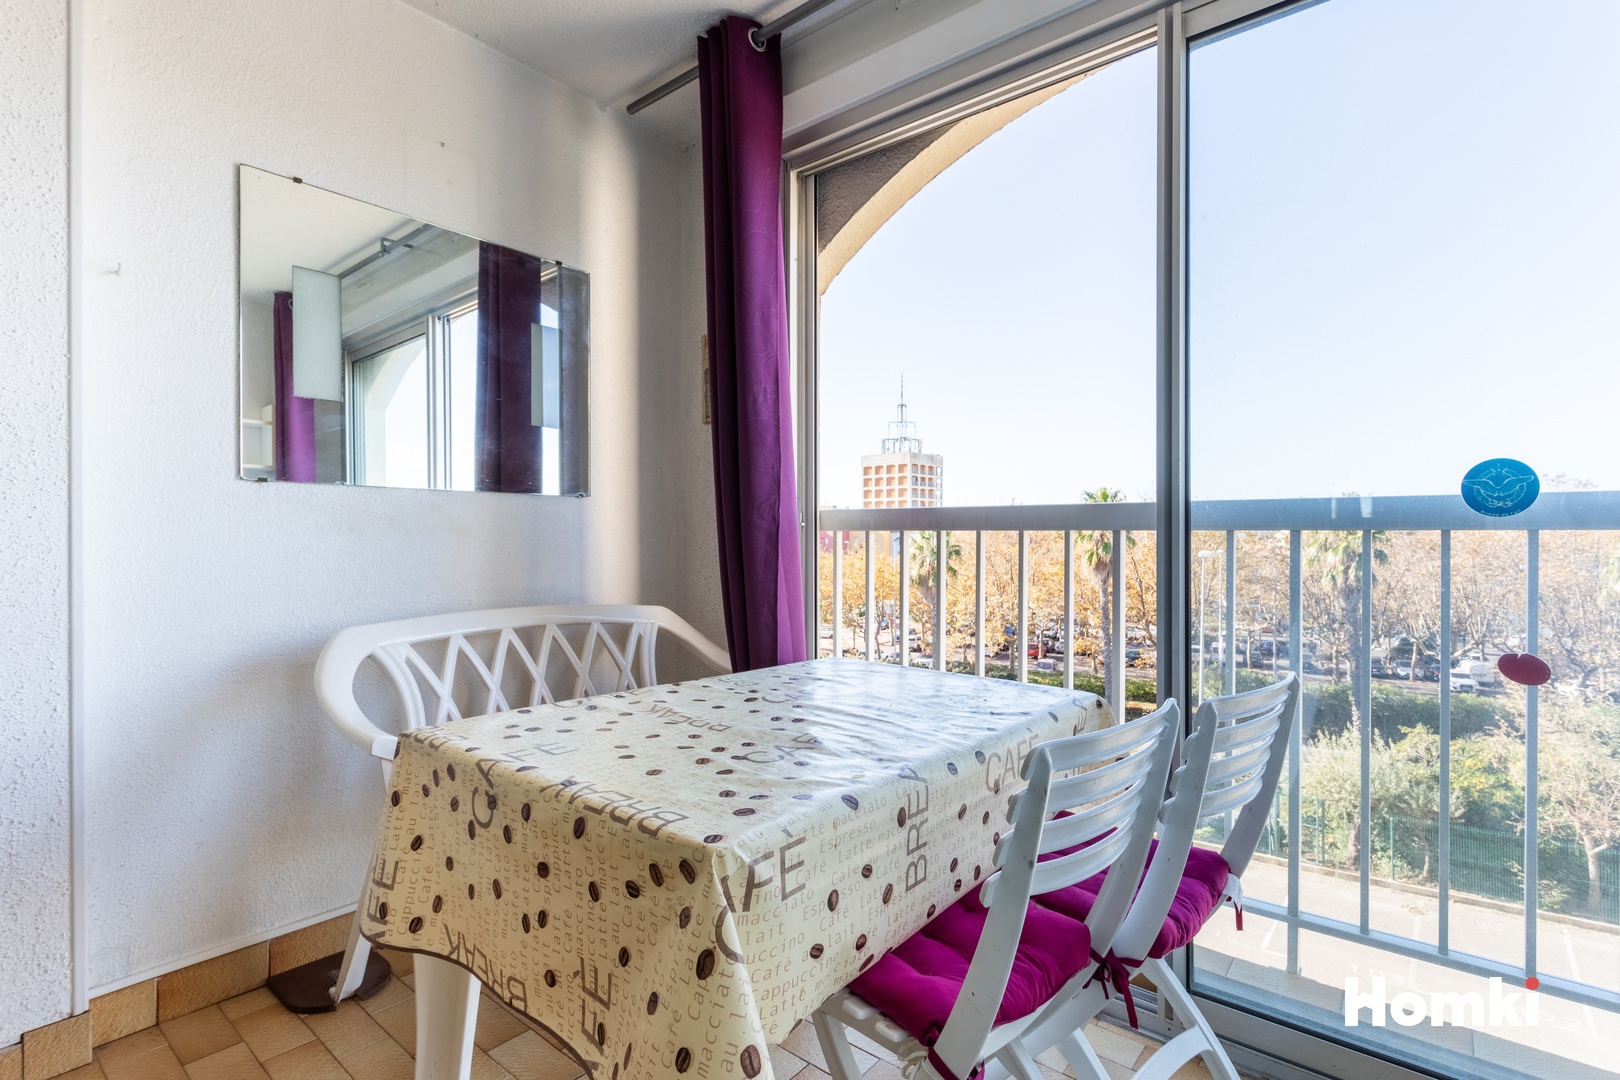 Homki - Vente Appartement  de 34.0 m² à Cap d'Agde 34300